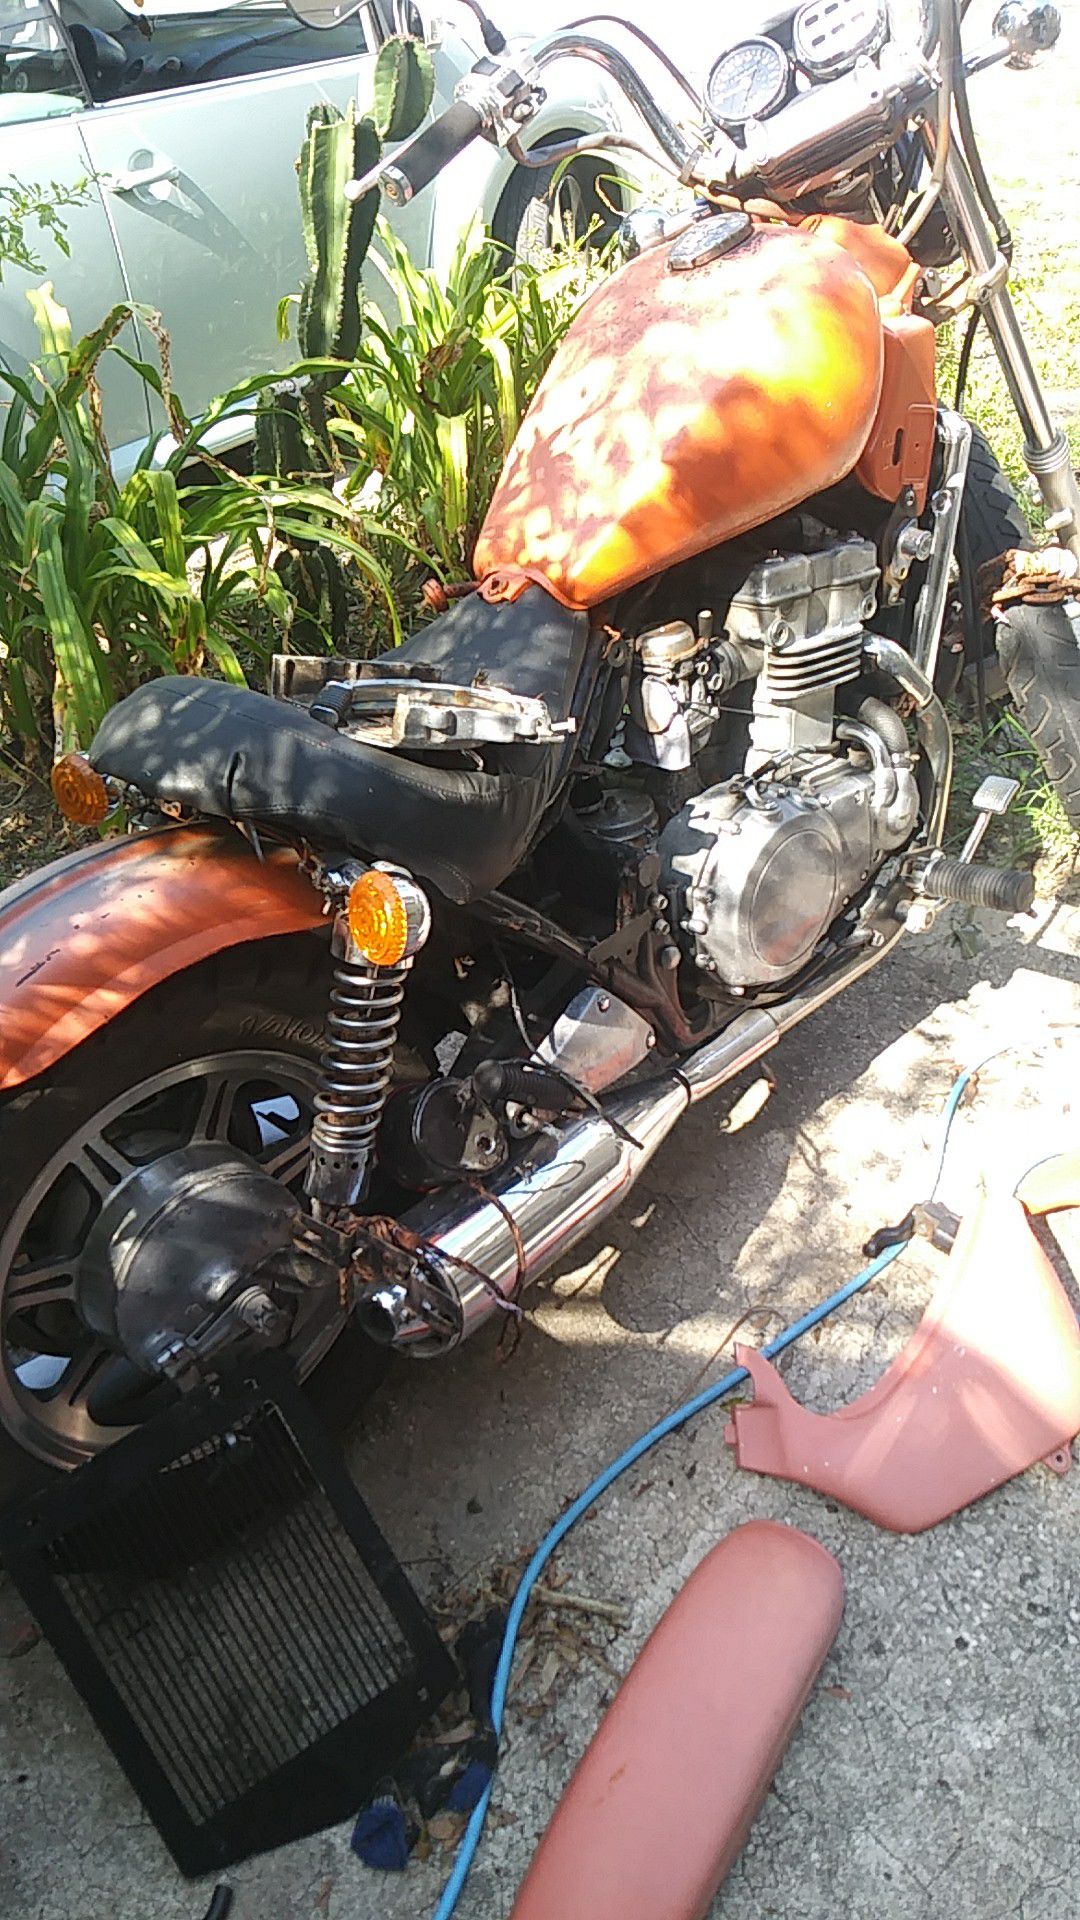 Motorcycle 96 kawasaki vulcan en500a bobber